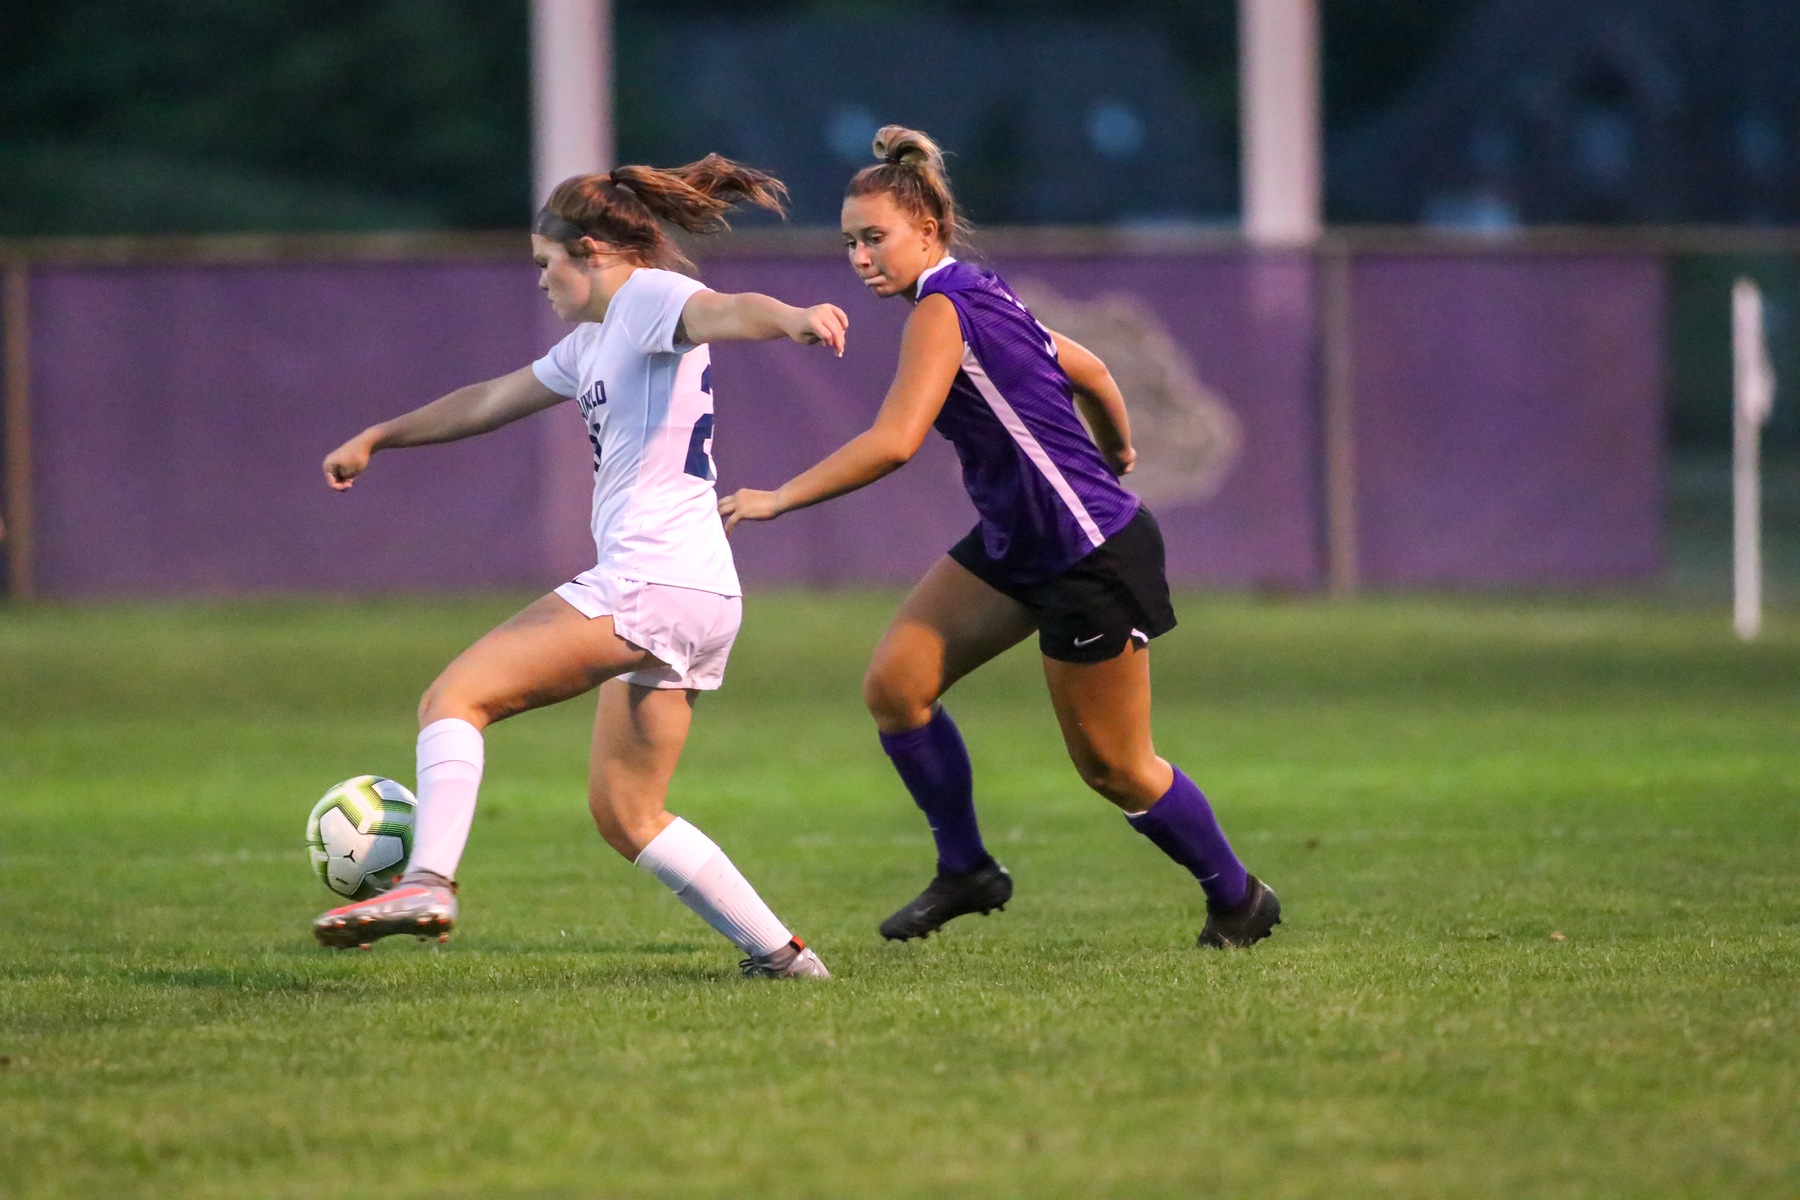 Second-half goals lift Girls' soccer over Franklin Central, 2-0